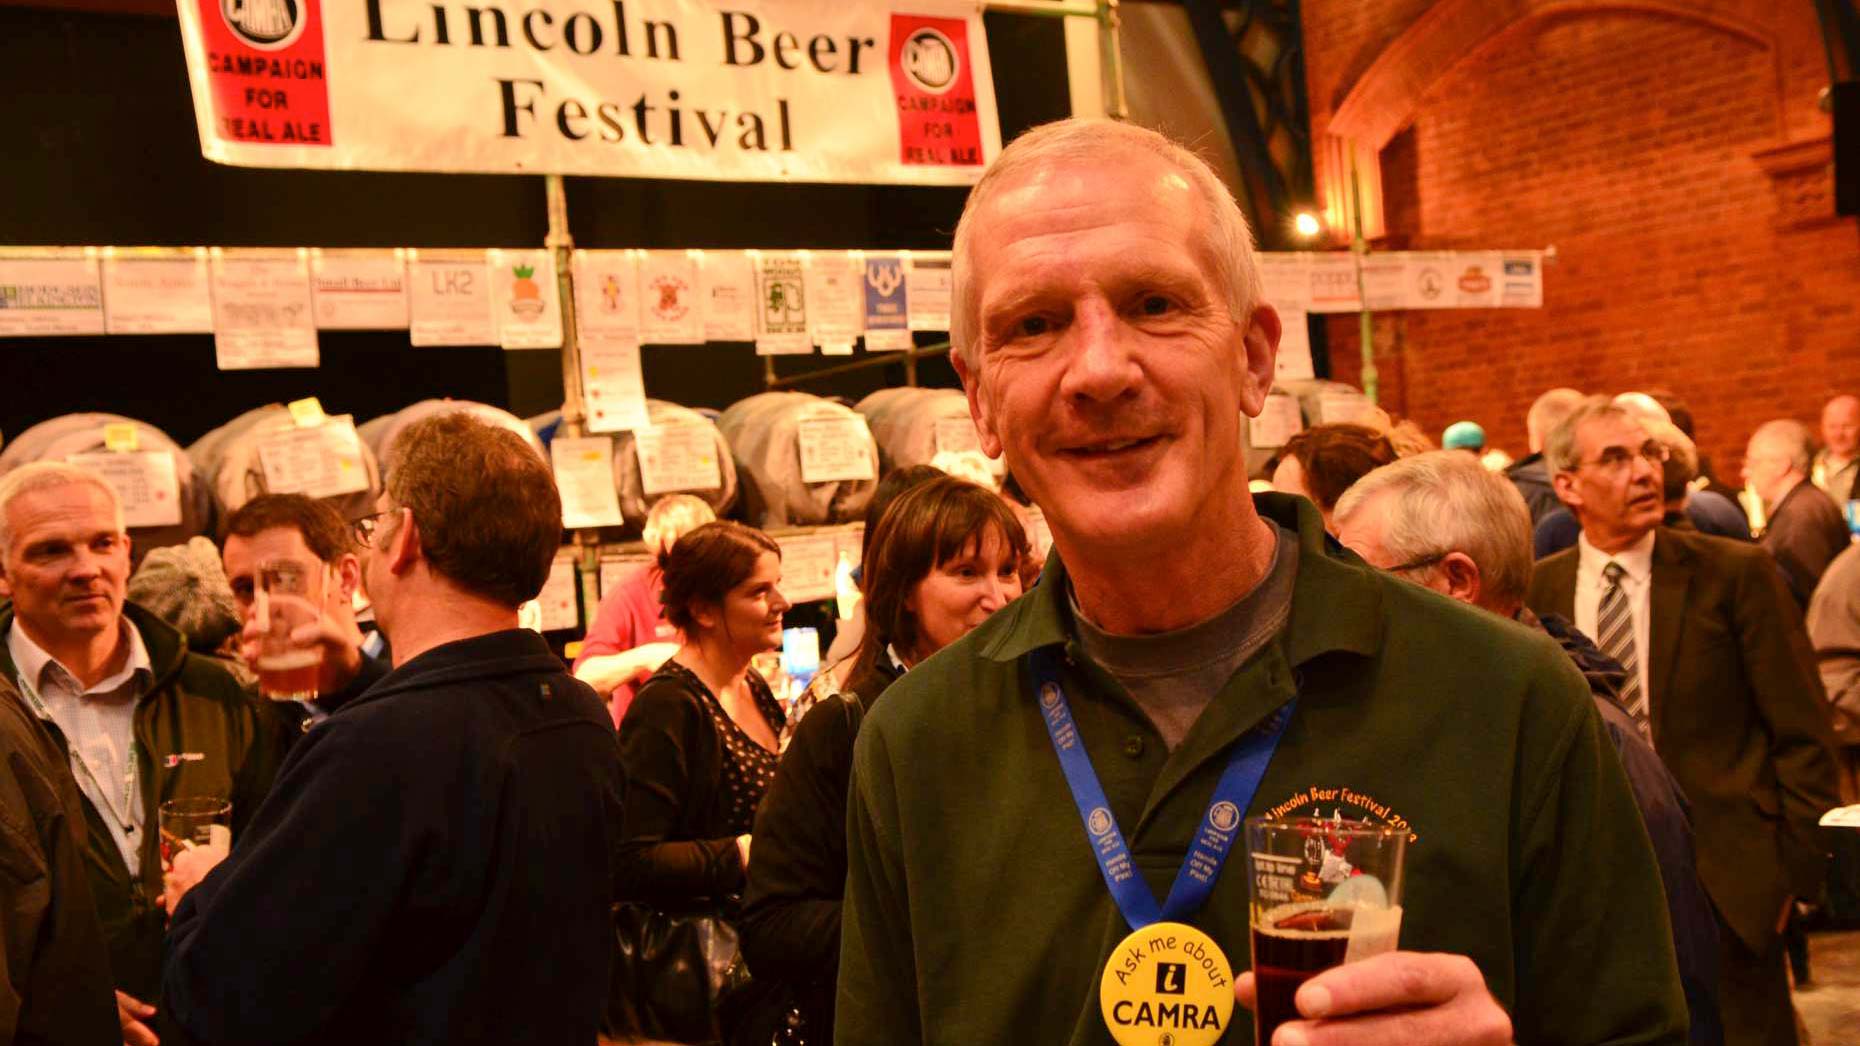 Steve Renshaw, organiser of the Lincoln Beer Festival. Photo: Steve Smailes for The Lincolnite